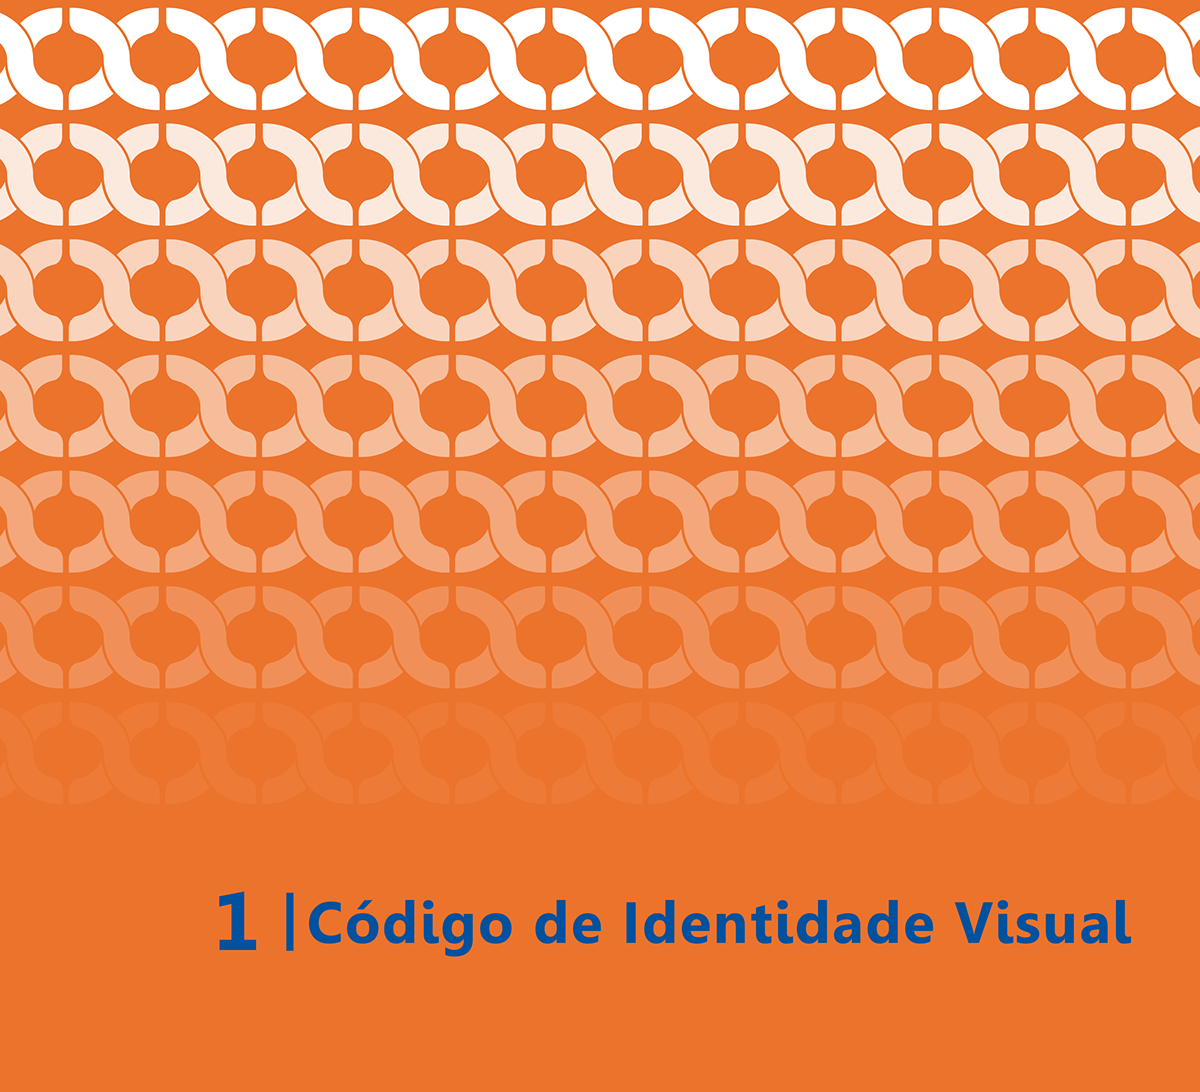 Branding Project ID visual identity design Banco Caixa Economica